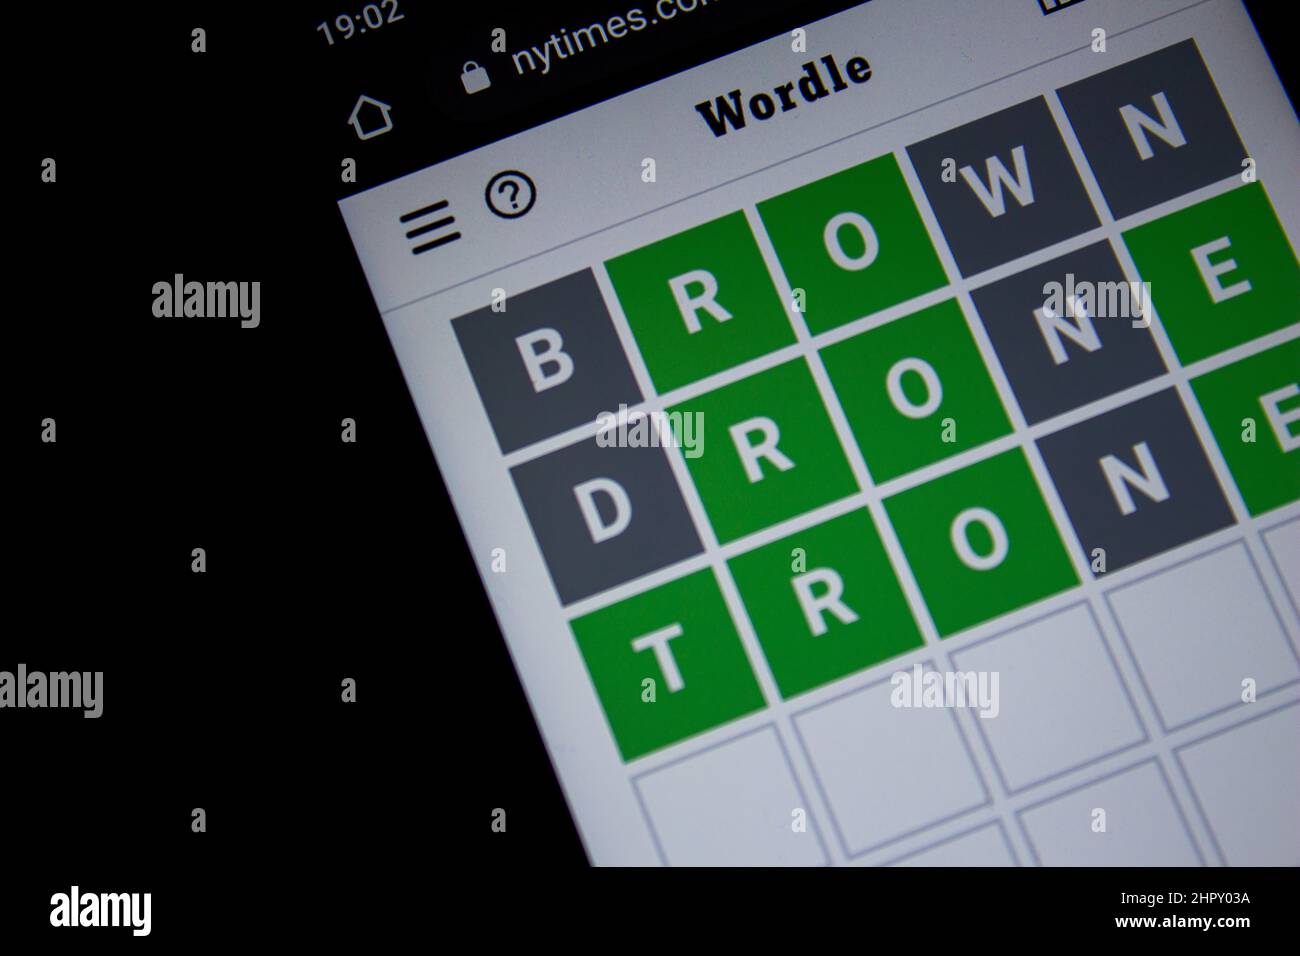 Afyonkarahisar, Türkei - 24. Feb 2022: Wortle Game auf dem Smartphone-Bildschirm. Wordle, das beliebte virale Online-Spiel der letzten Zeit. Stockfoto